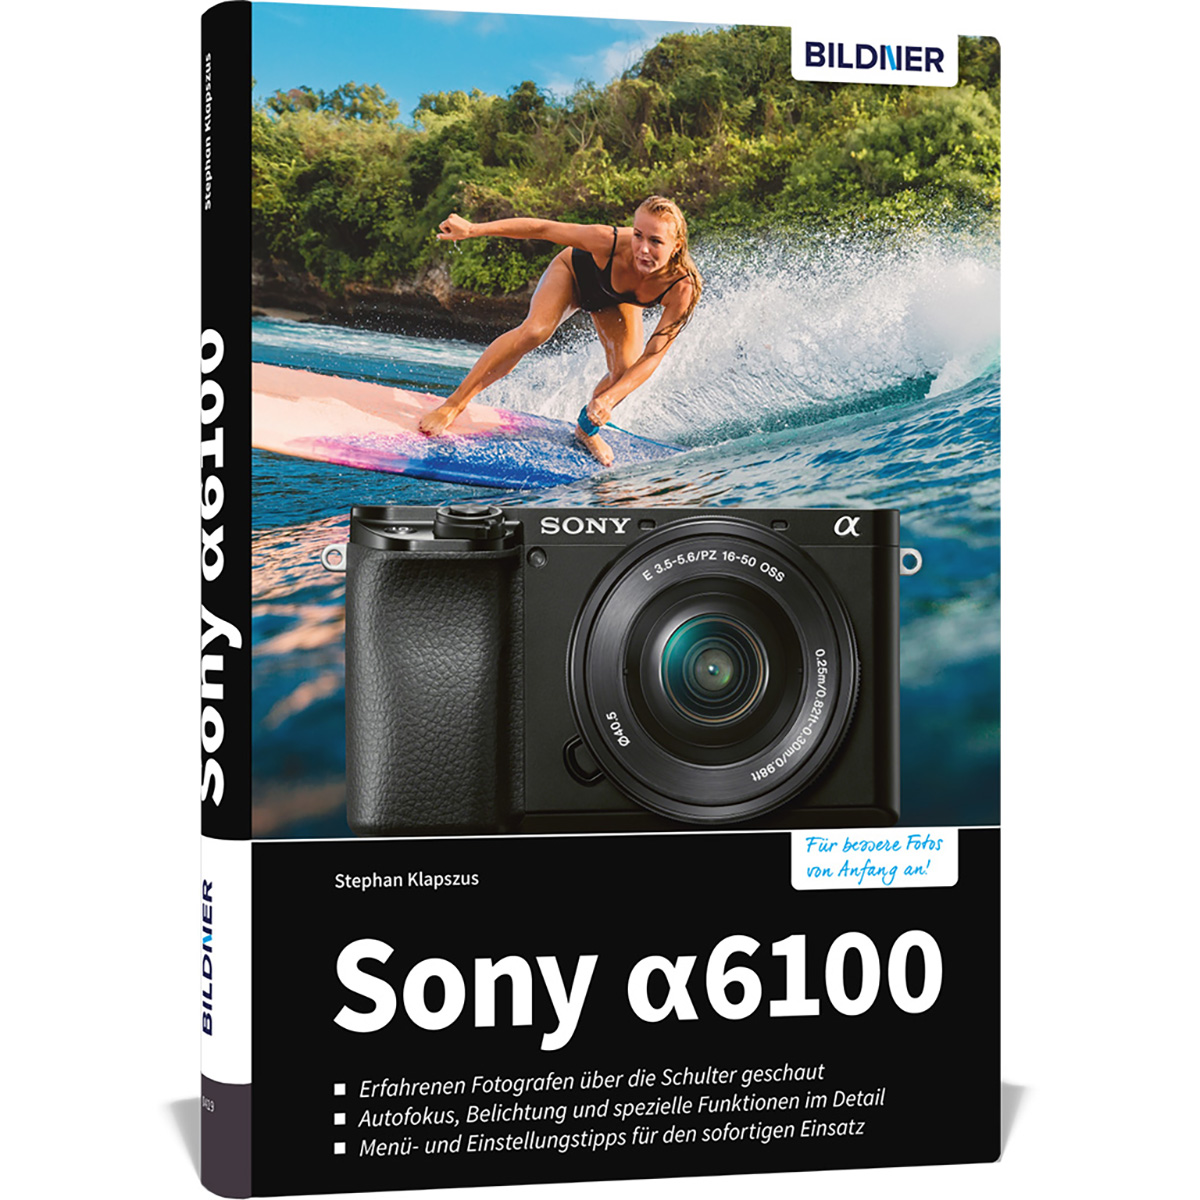 zu Praxisbuch Ihrer - A6100 Sony Kamera! umfangreiche Das